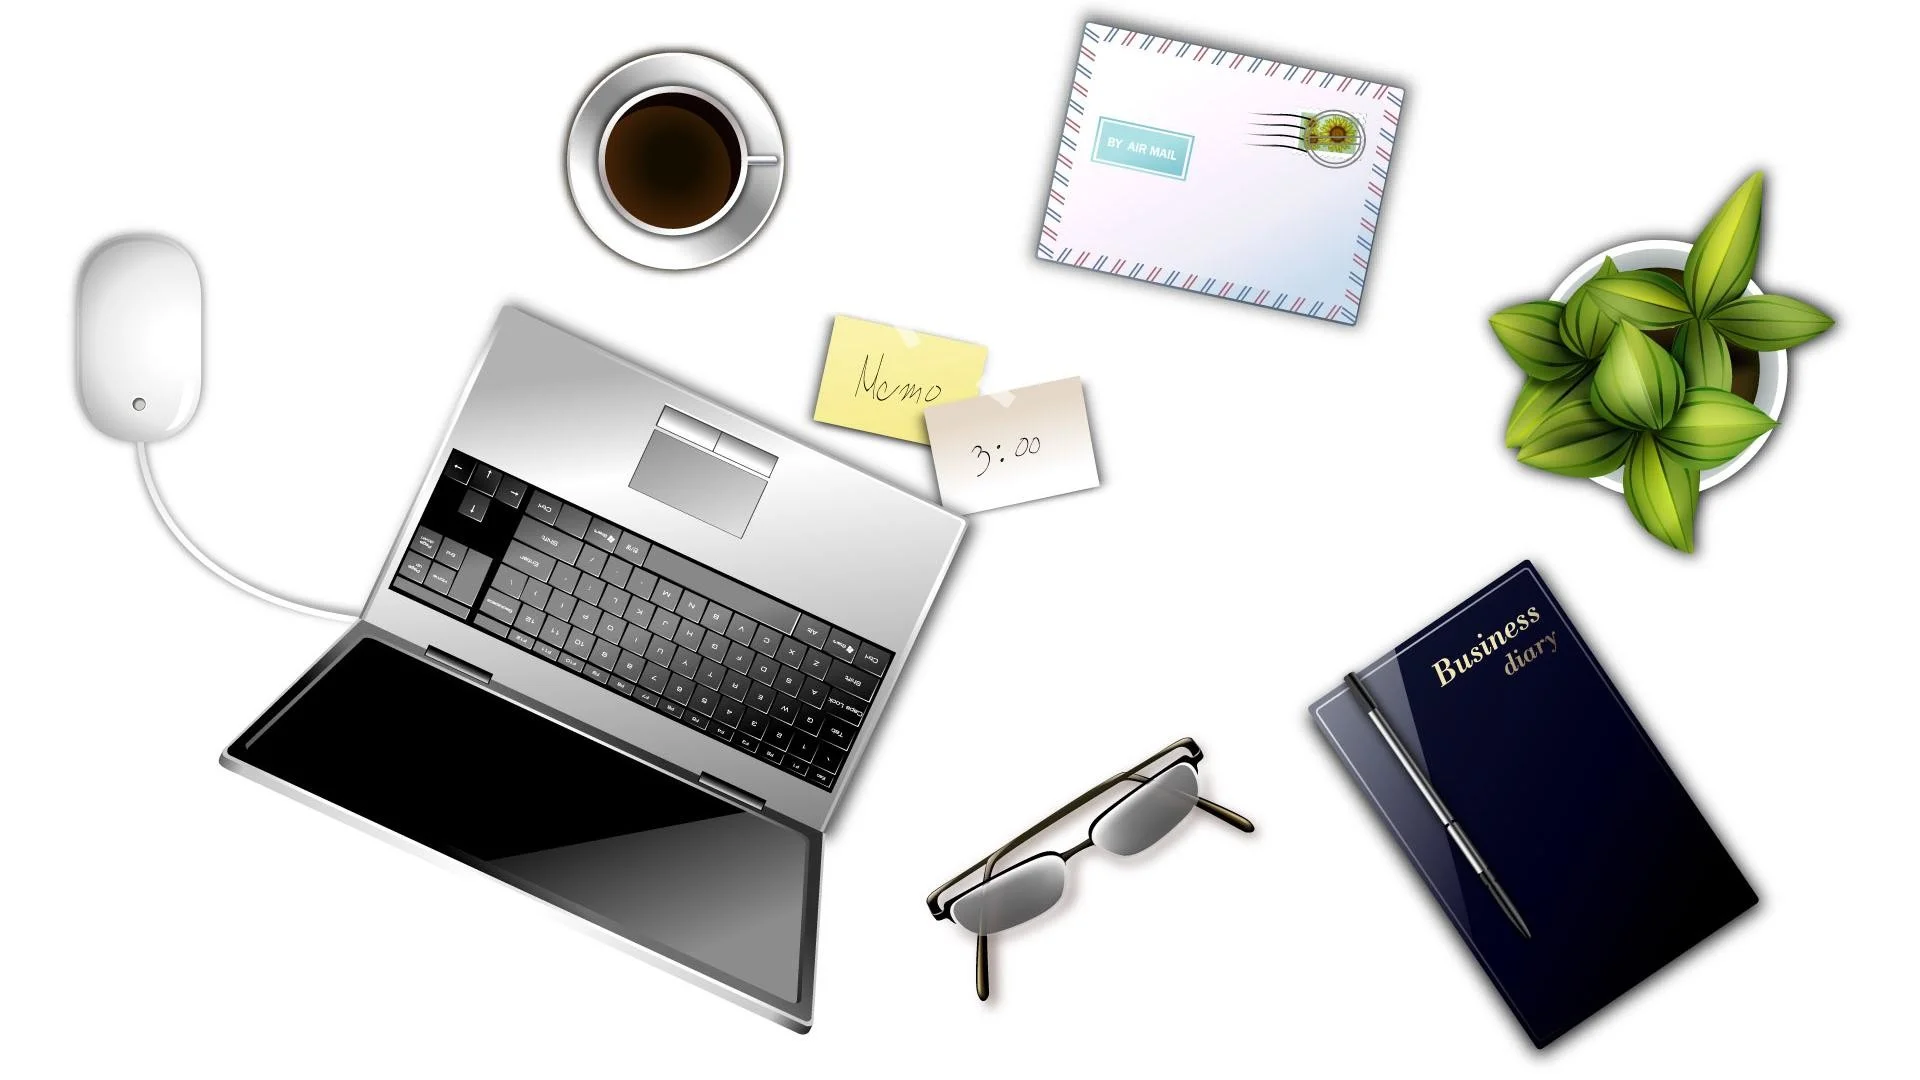 Digital Office supplies desktop design